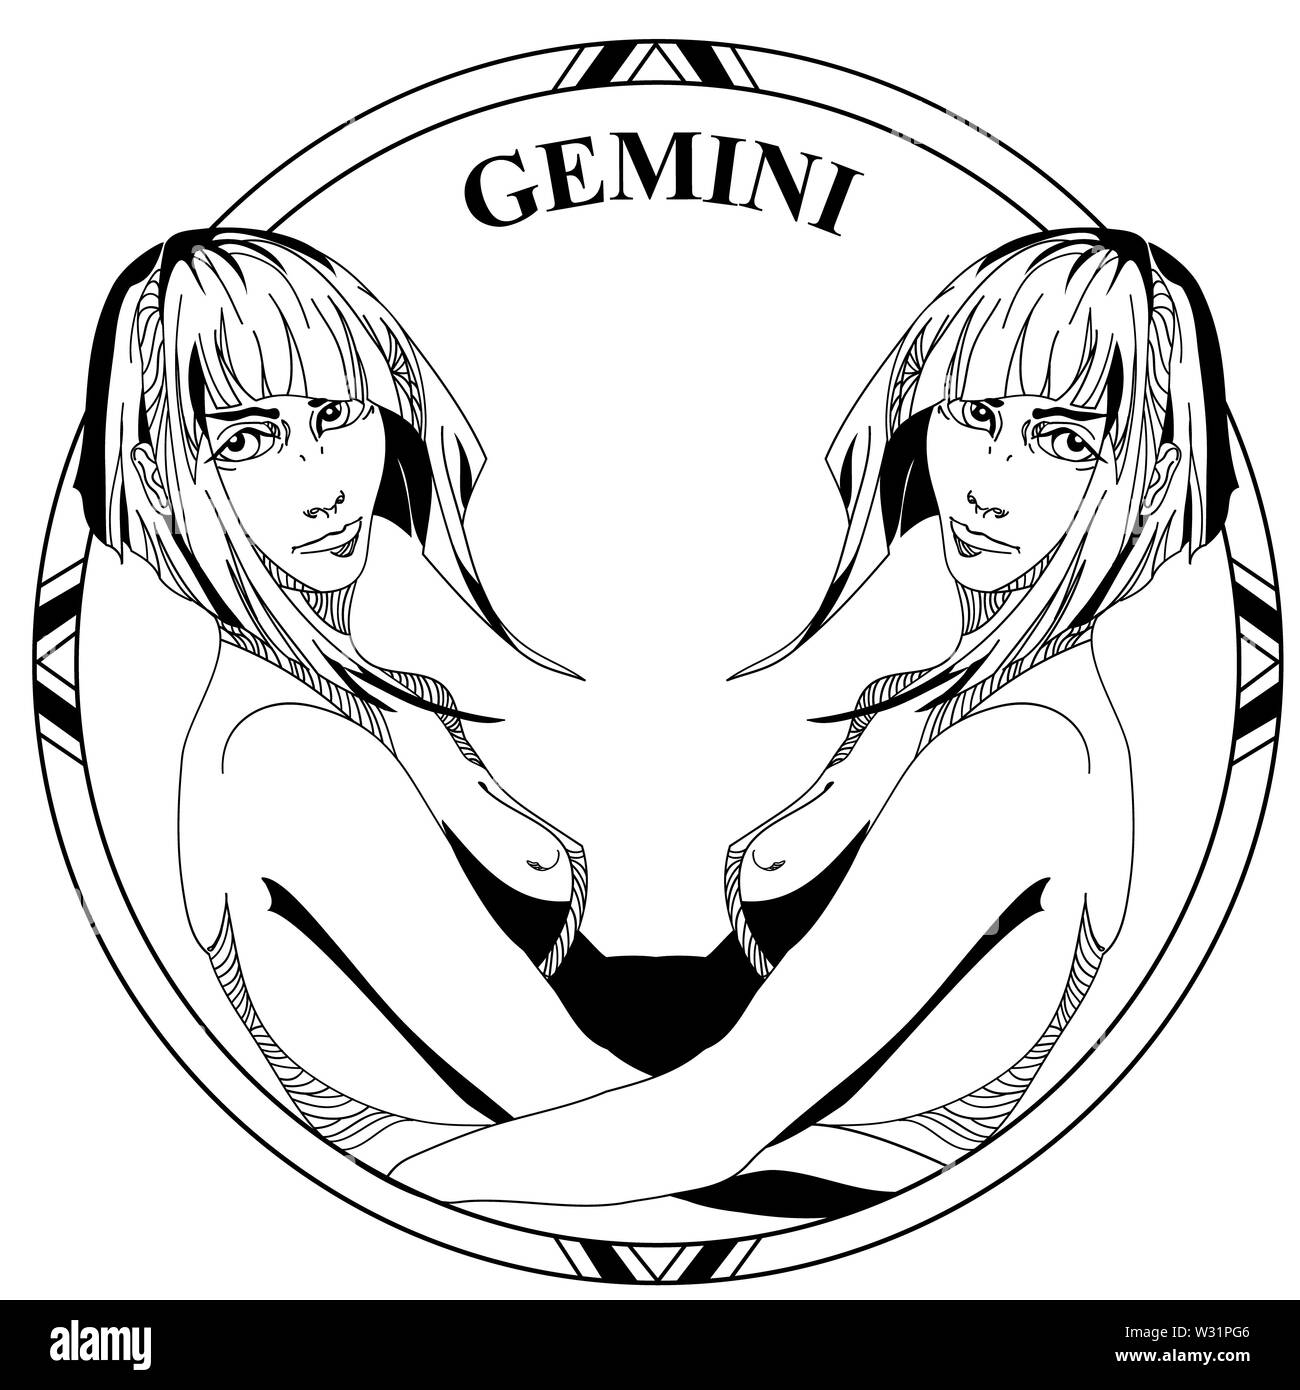 39 Gorgeous Zodiac Gemini Tattoos that Redefine Glamorous  Page 2 of 2